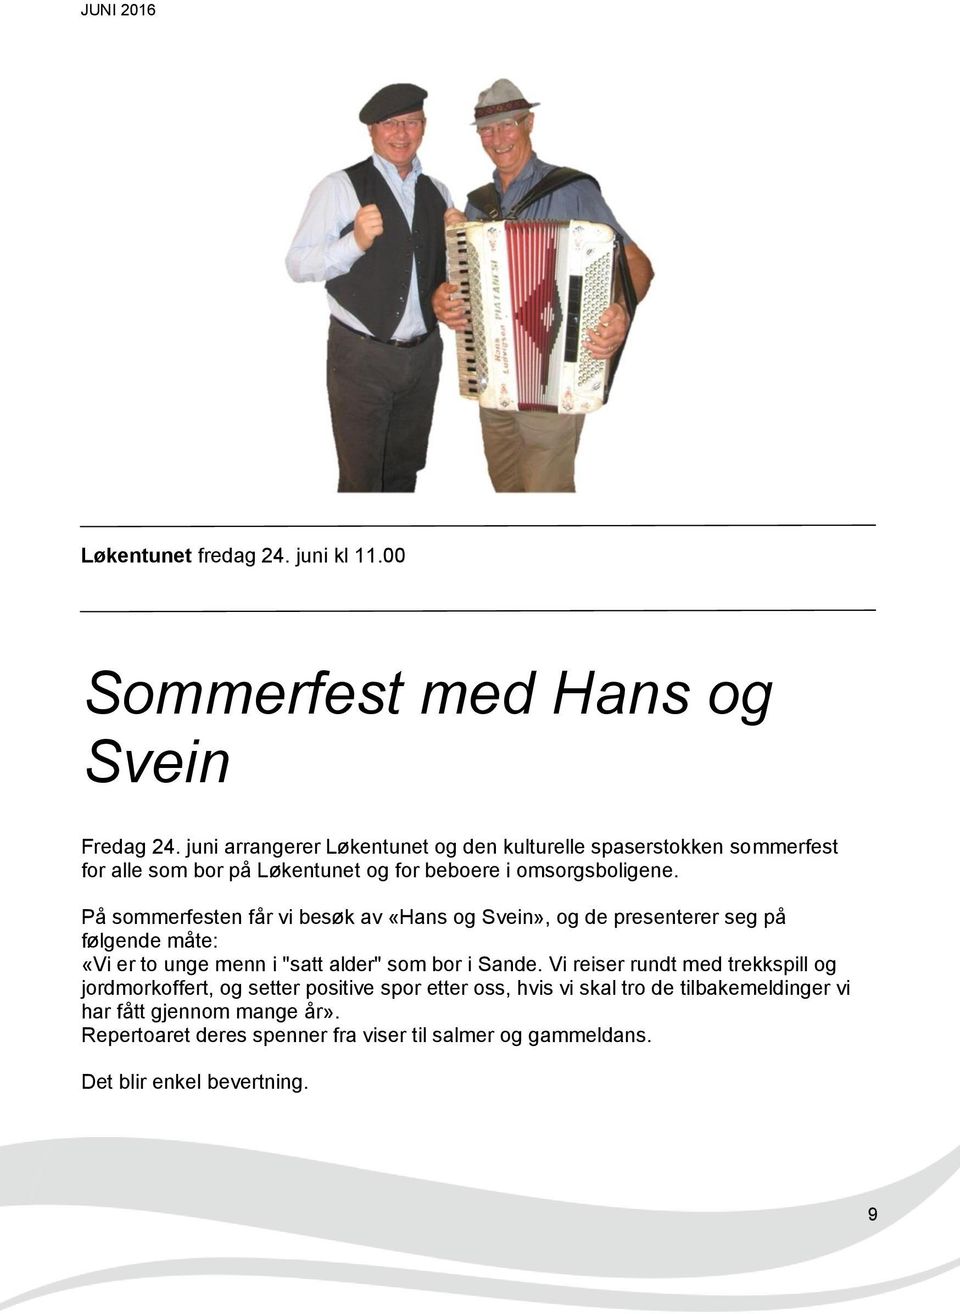 På sommerfesten får vi besøk av «Hans og Svein», og de presenterer seg på følgende måte: «Vi er to unge menn i "satt alder" som bor i Sande.